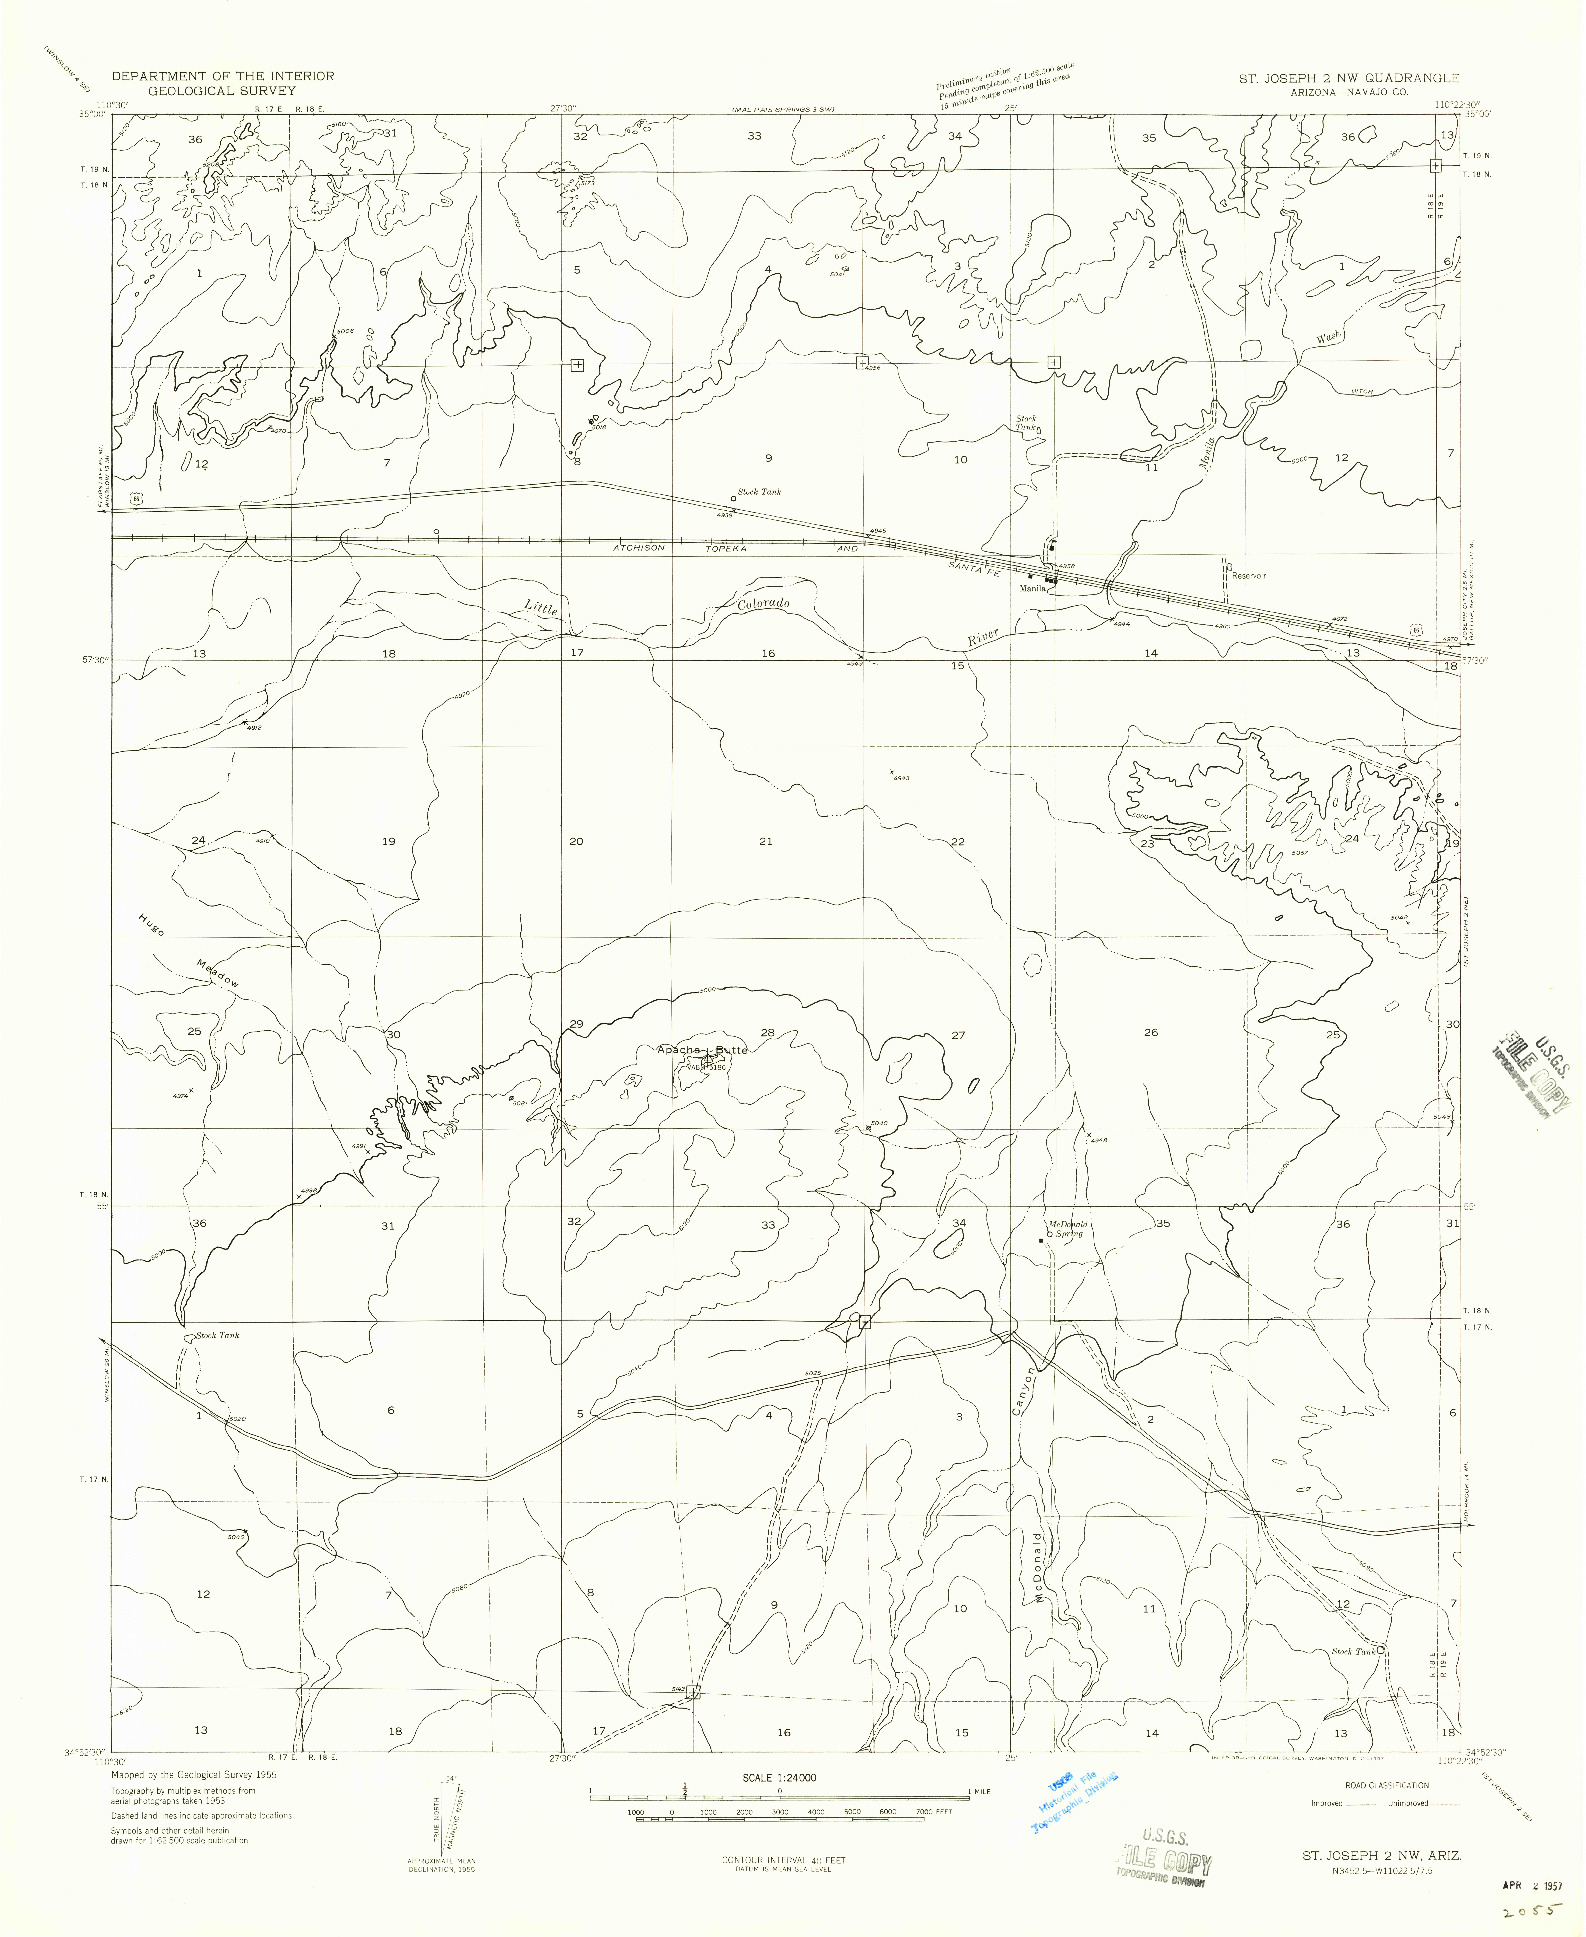 USGS 1:24000-SCALE QUADRANGLE FOR ST. JOSEPH 2 NW, AZ 1955